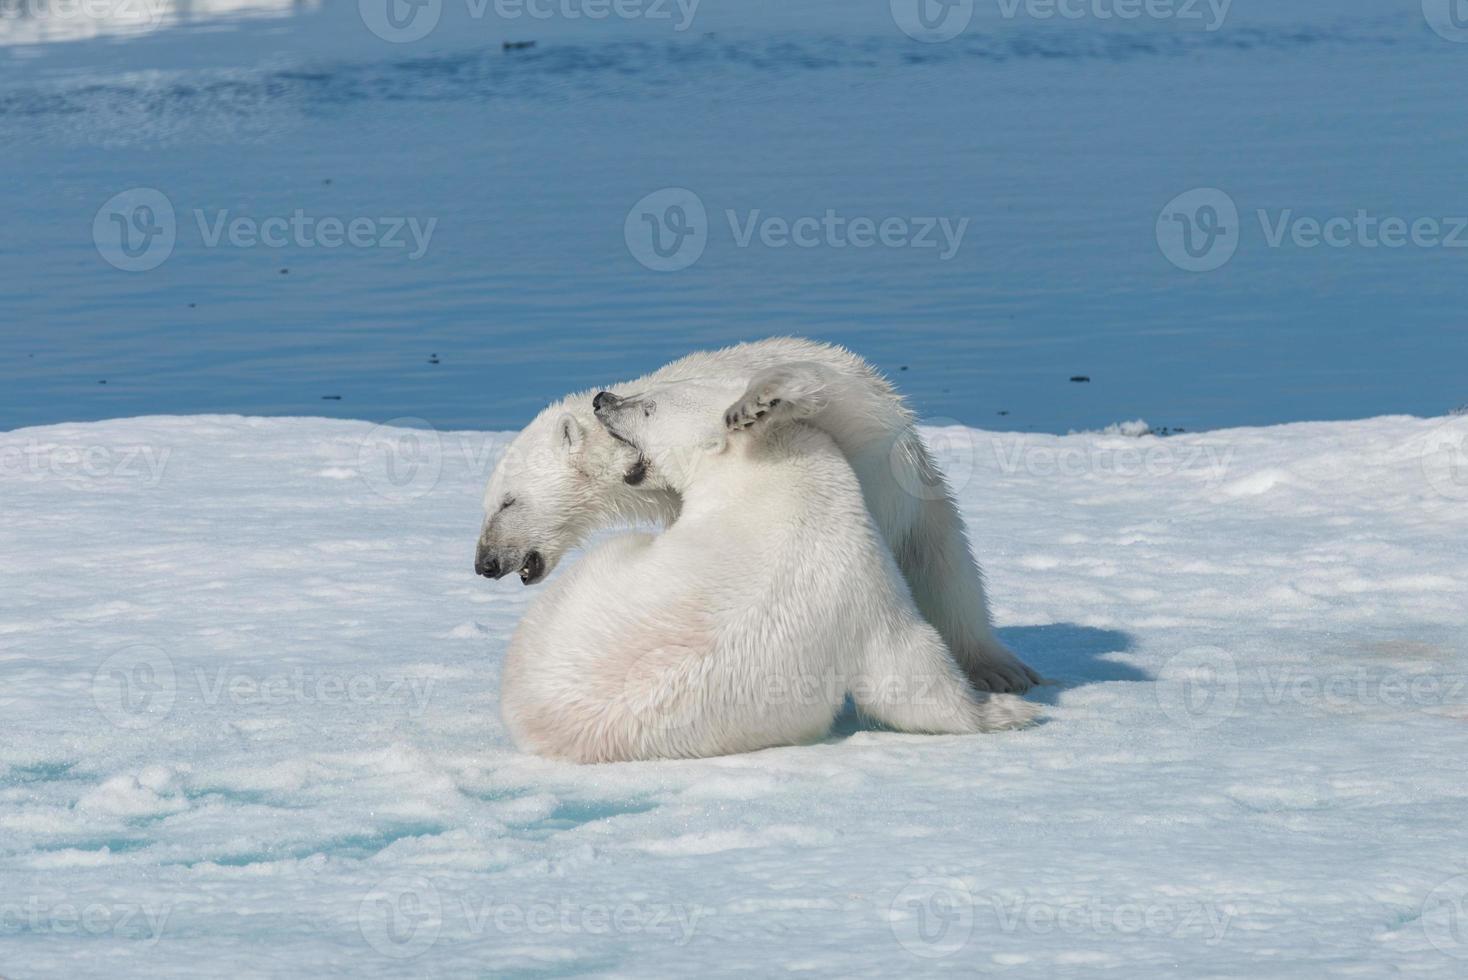 Due giovani cuccioli di orso polare selvatico che giocano sulla banchisa nel mare artico, a nord delle svalbard foto